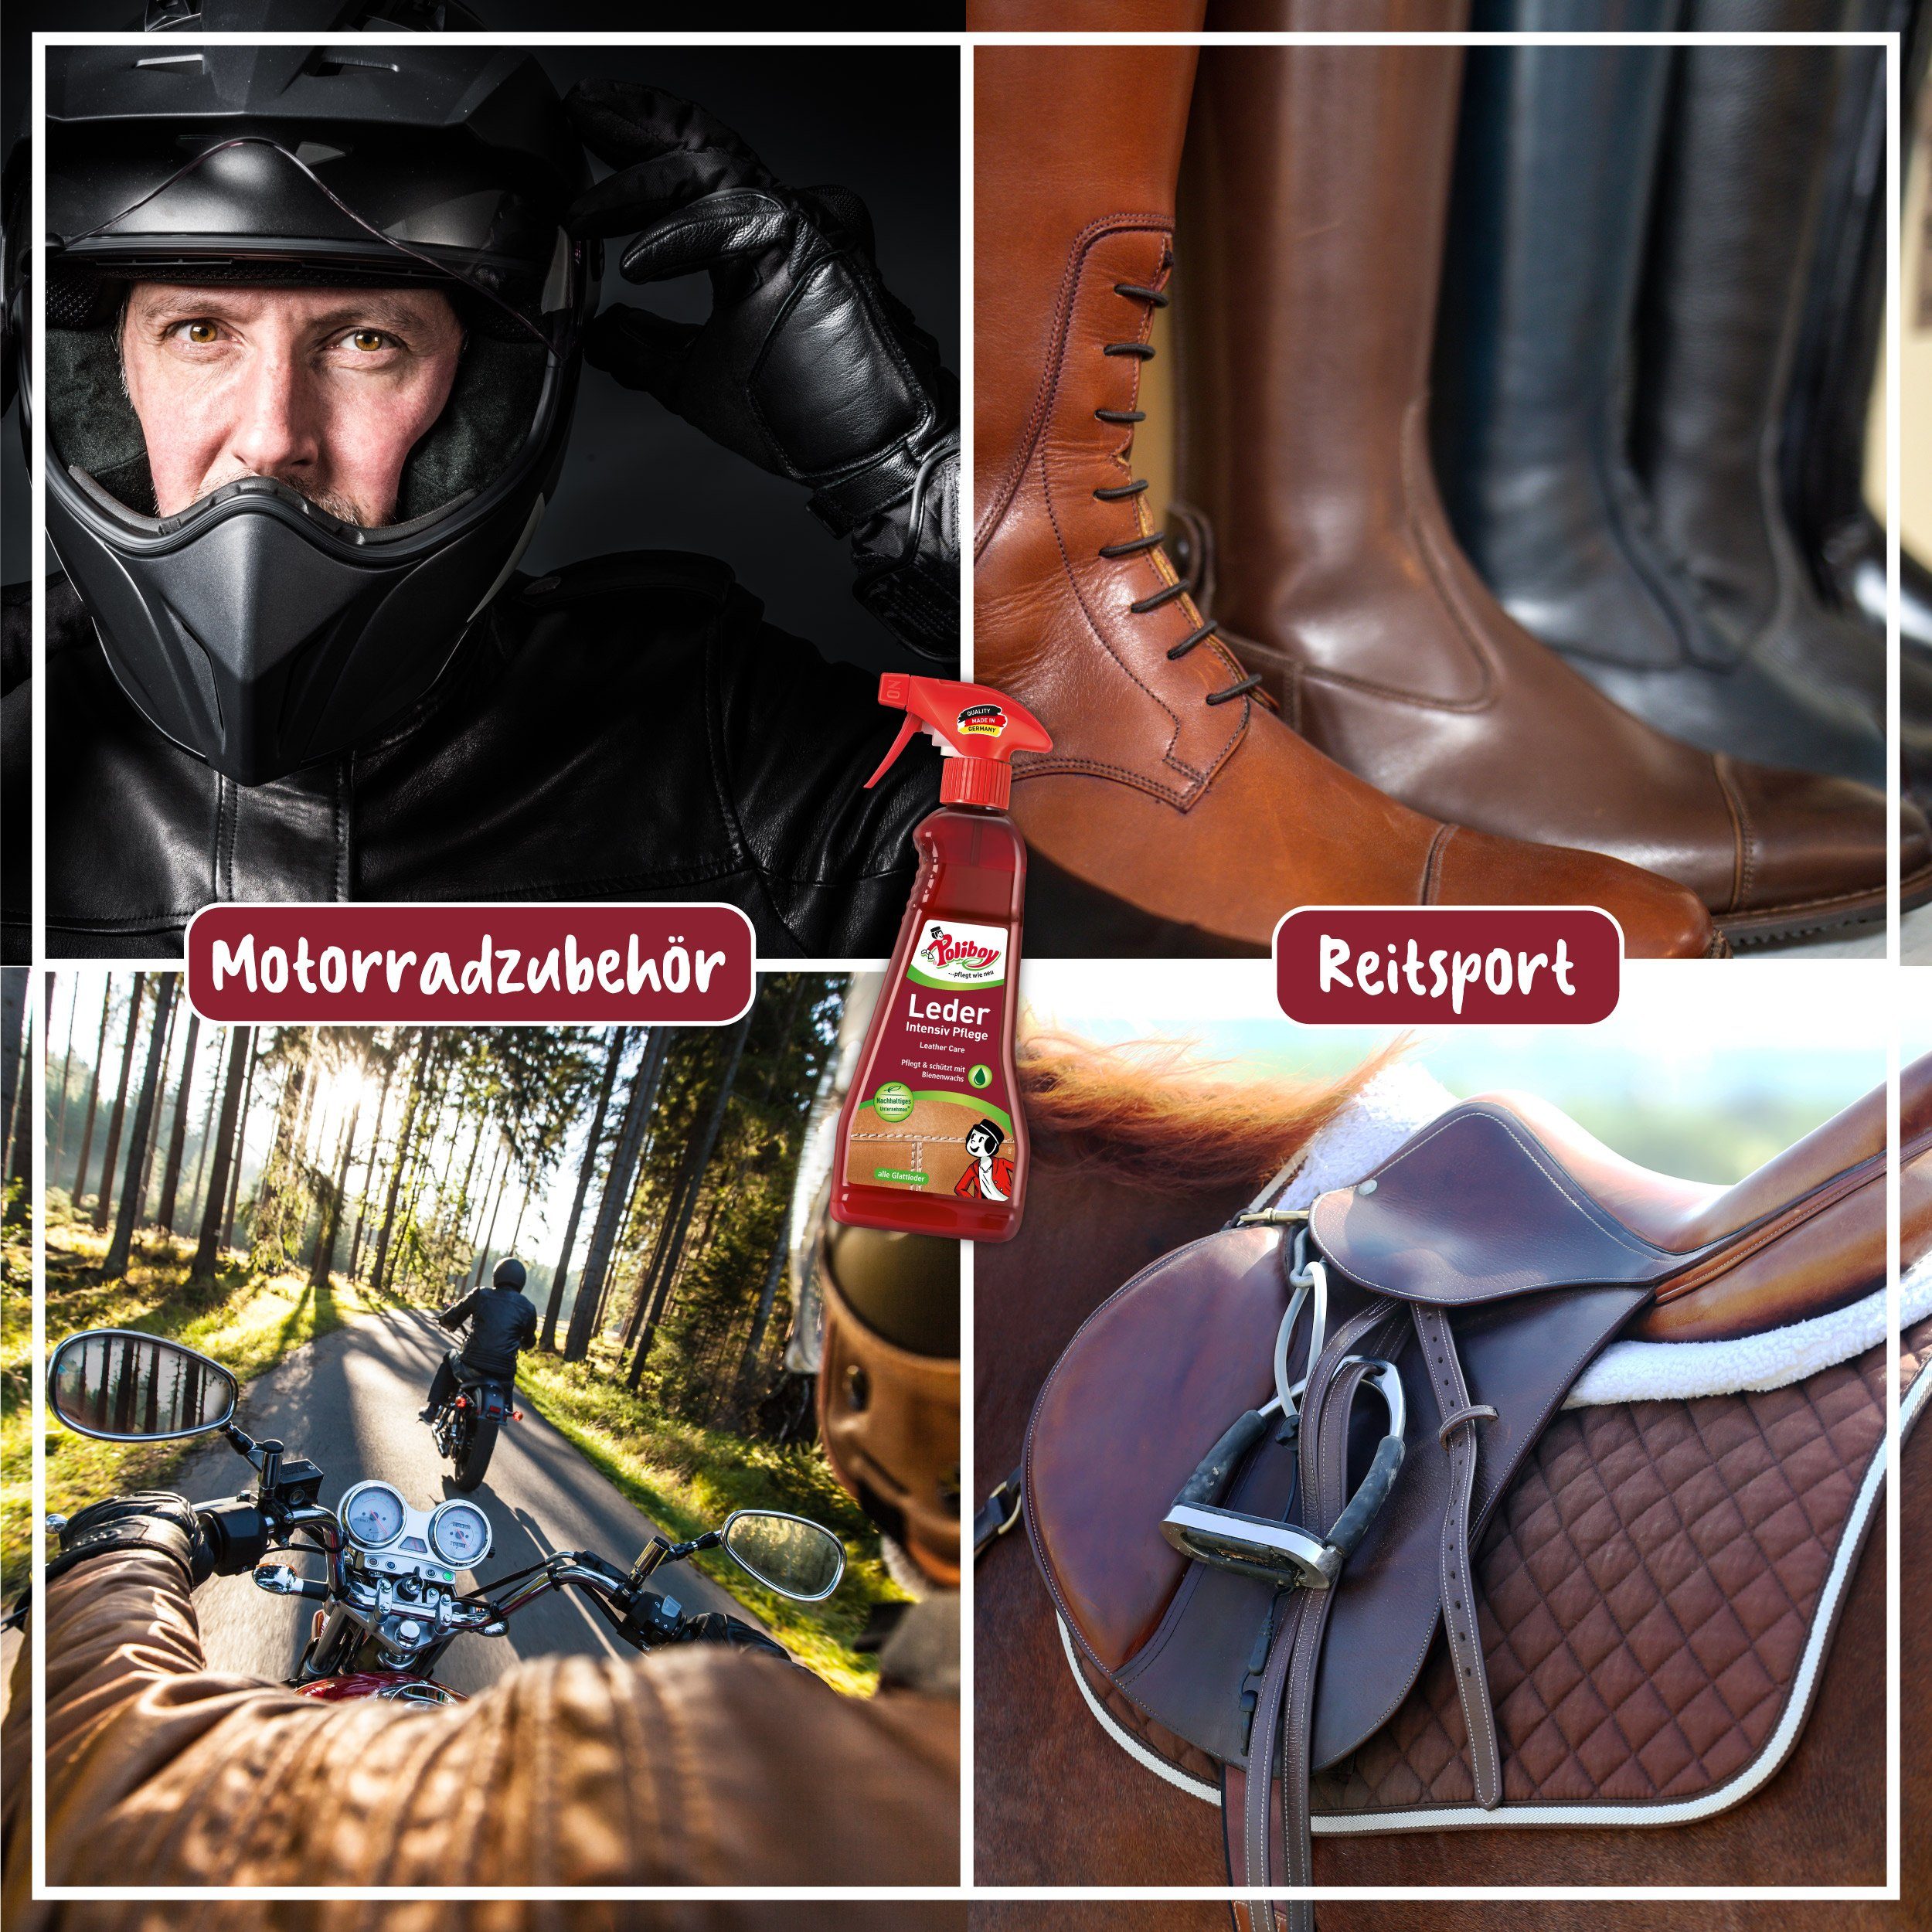 glatten und 5x200ml - alle Pflege pflegt Leder (für und Leder poliboy schützt in - Germany) reinigt, Intensiv - Made Lederreiniger genarbten -